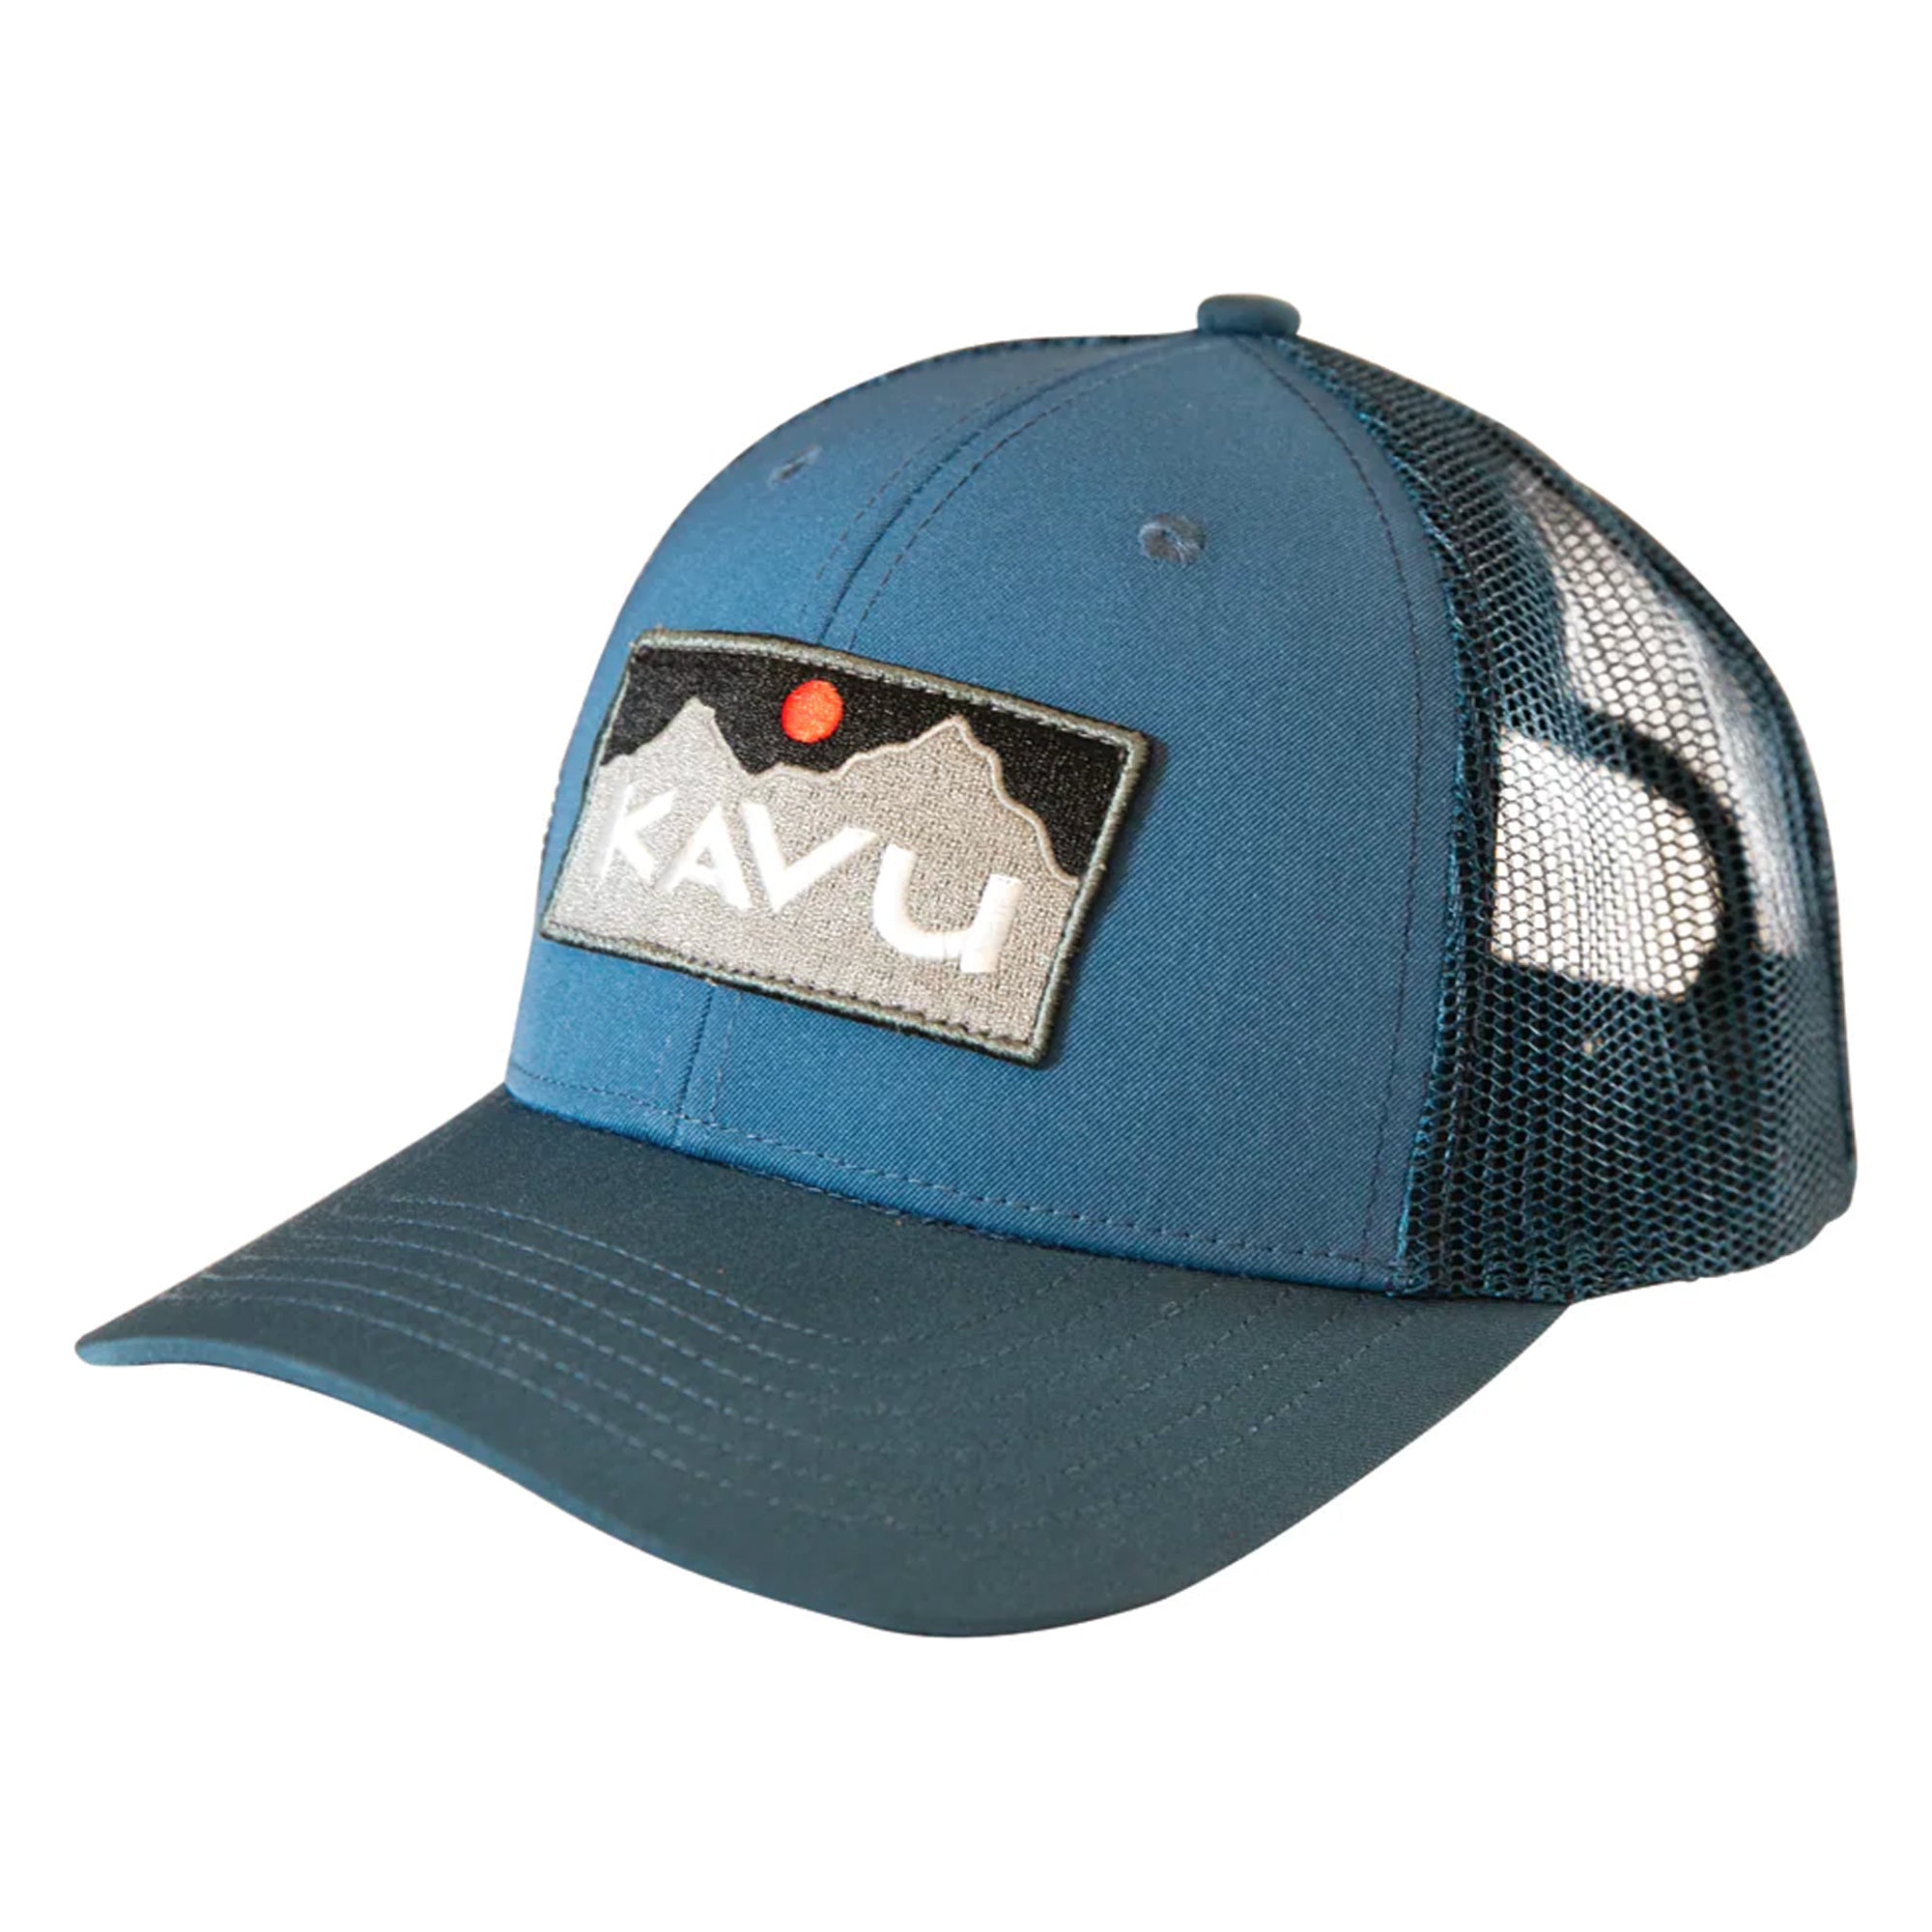 KAVU Above Standard Cap - Vintage Blue